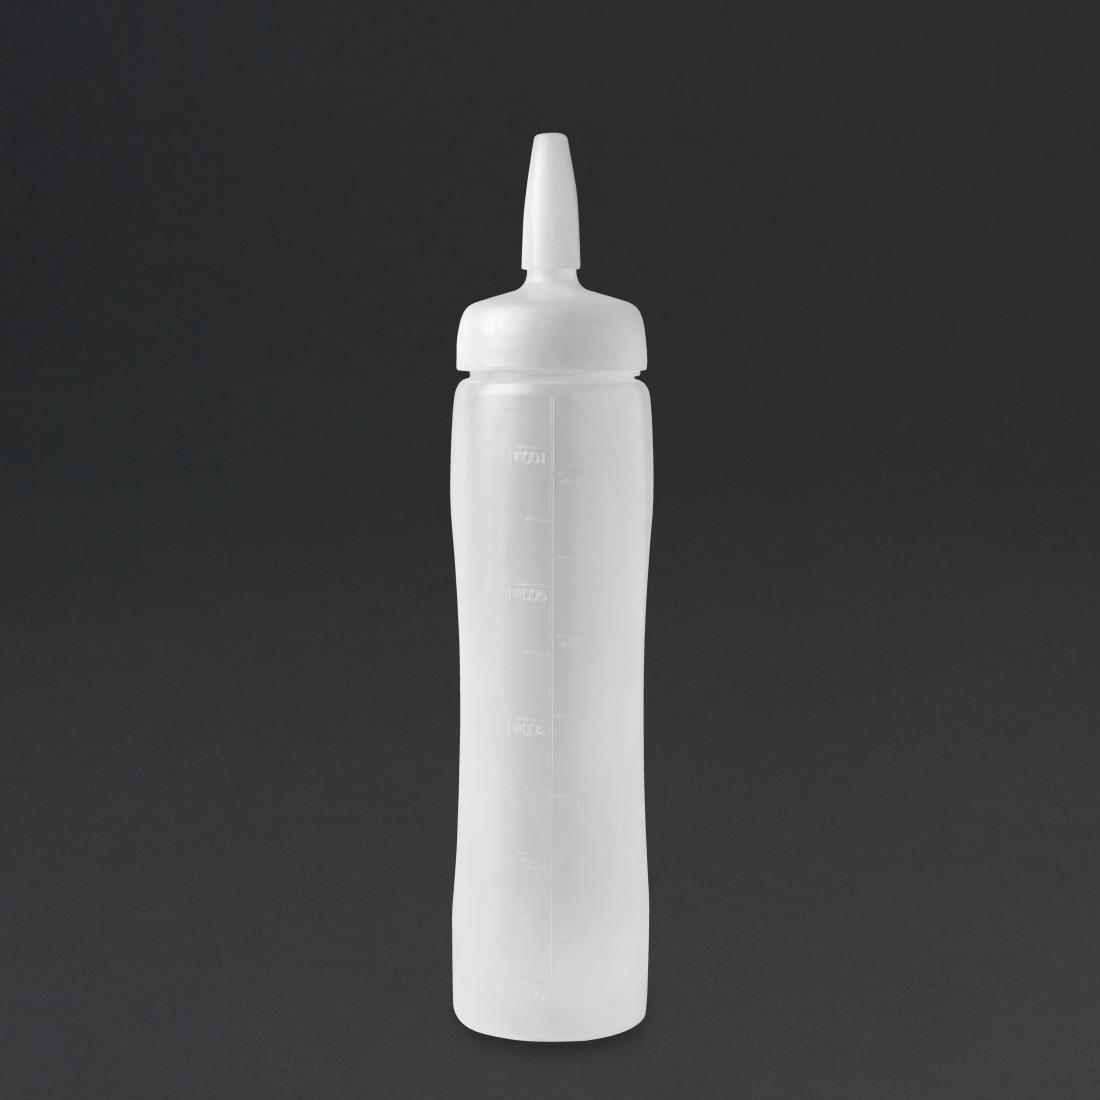 Araven Sauce Bottle 17oz - CW121  - 1